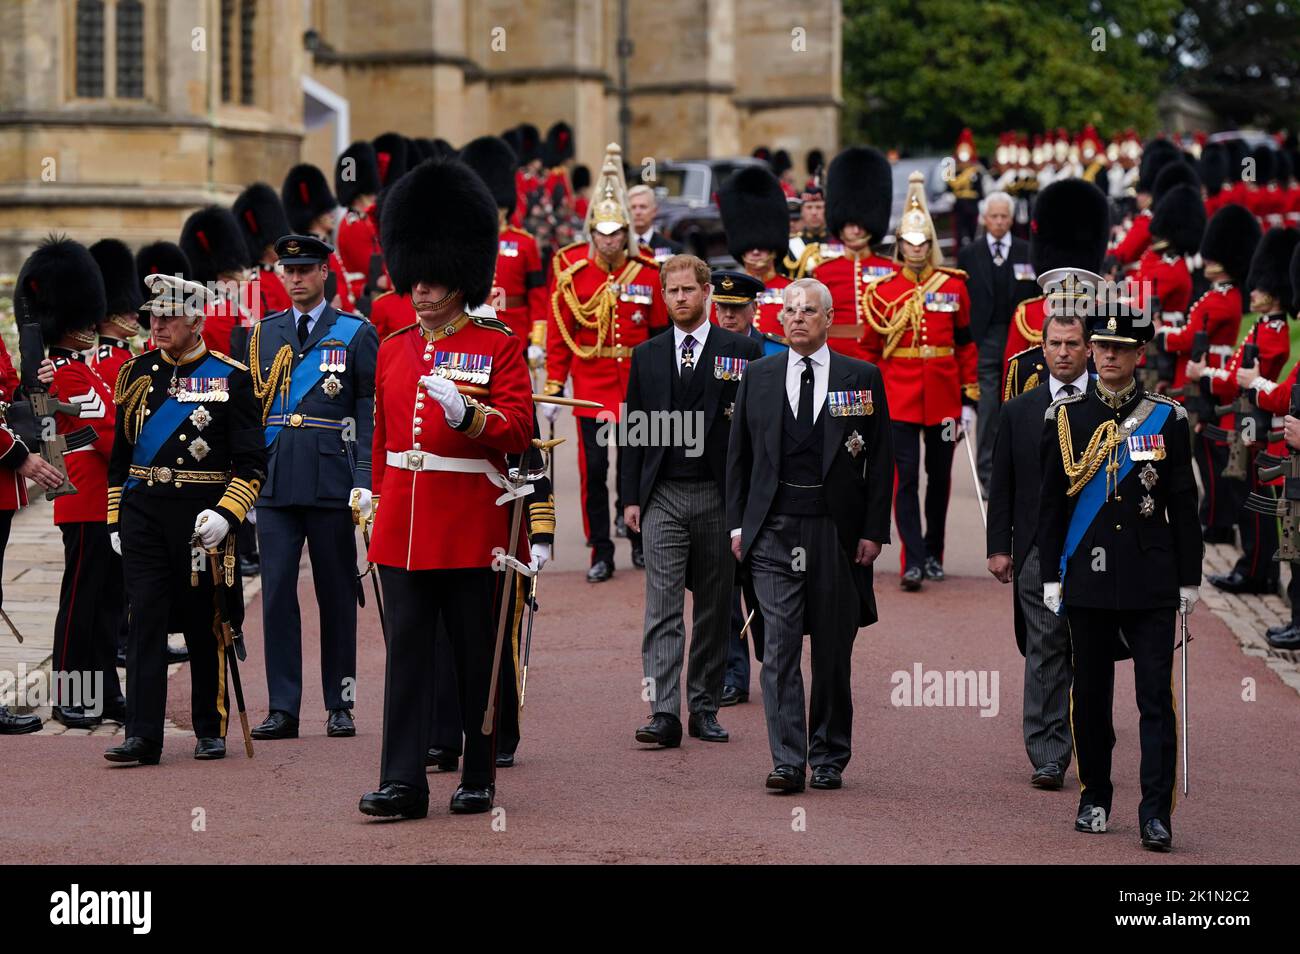 (De izquierda a derecha) El rey Carlos III, el príncipe de Gales, el duque de Sussex, el duque de York, Peter Phillips y el conde de Wessex siguen el State Hearse lleva el ataúd de la reina Isabel II, Dibujado en el Estándar Real con la Corona Imperial del Estado y el Orb y Cetro del Soberano, durante la Procesión Ceremonial a través del Castillo de Windsor a un Servicio de Compromiso en la Capilla de San Jorge. Fecha de la foto: Lunes 19 de septiembre de 2022. Foto de stock